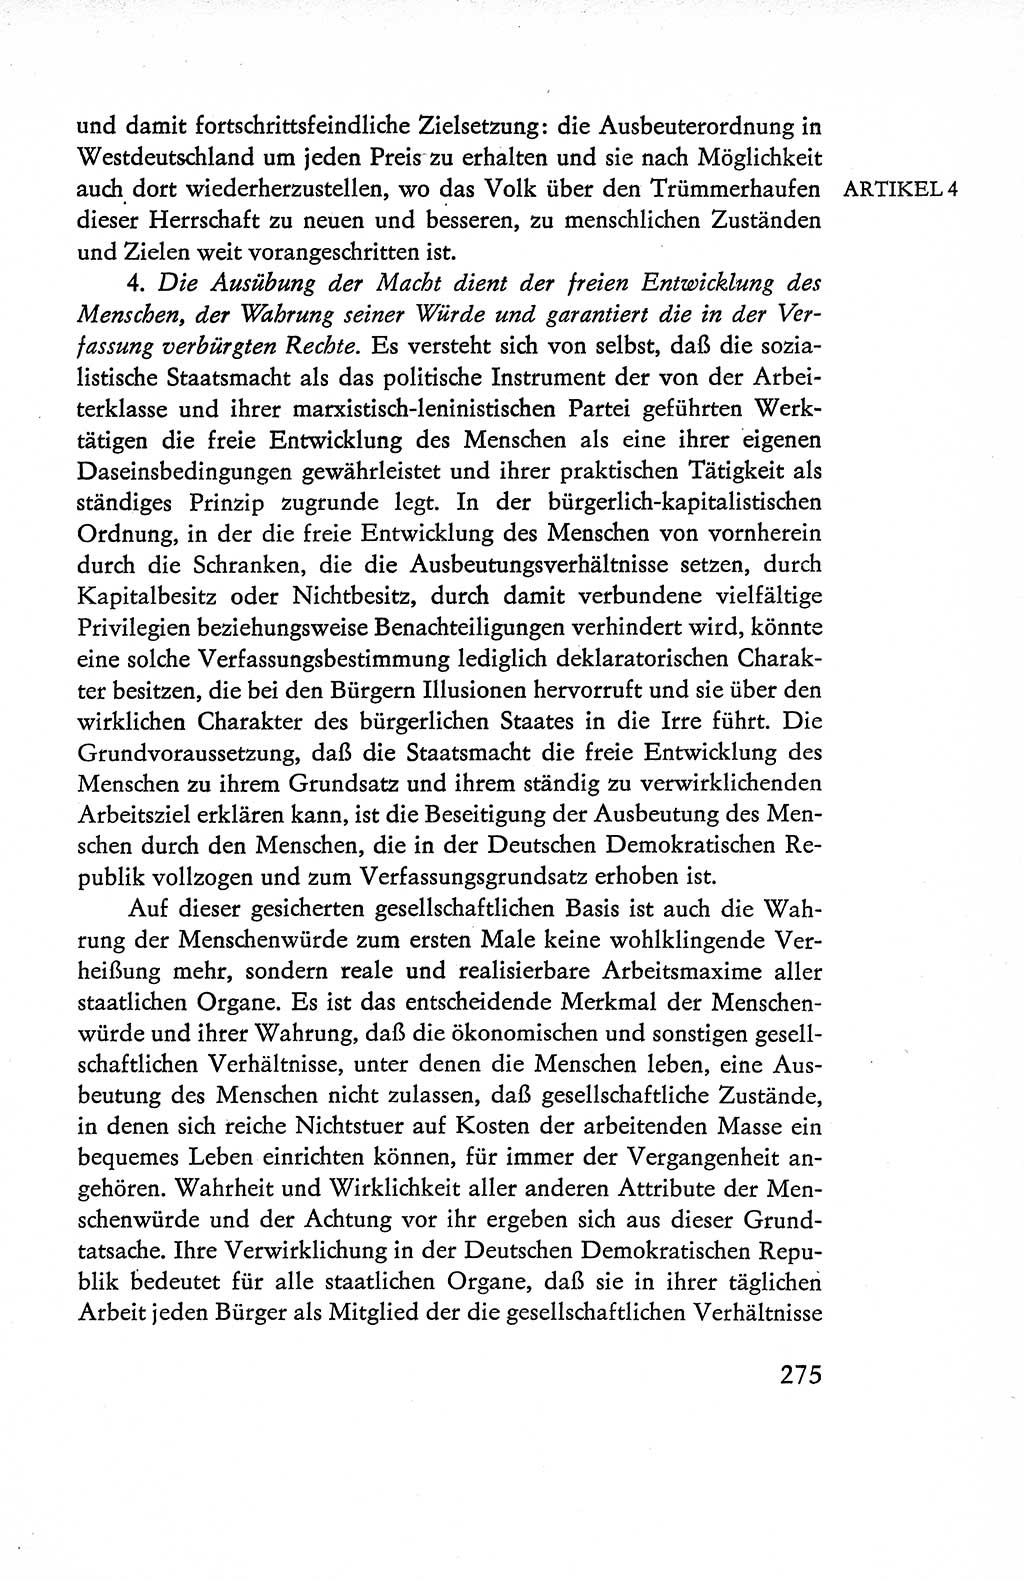 Verfassung der Deutschen Demokratischen Republik (DDR), Dokumente, Kommentar 1969, Band 1, Seite 275 (Verf. DDR Dok. Komm. 1969, Bd. 1, S. 275)